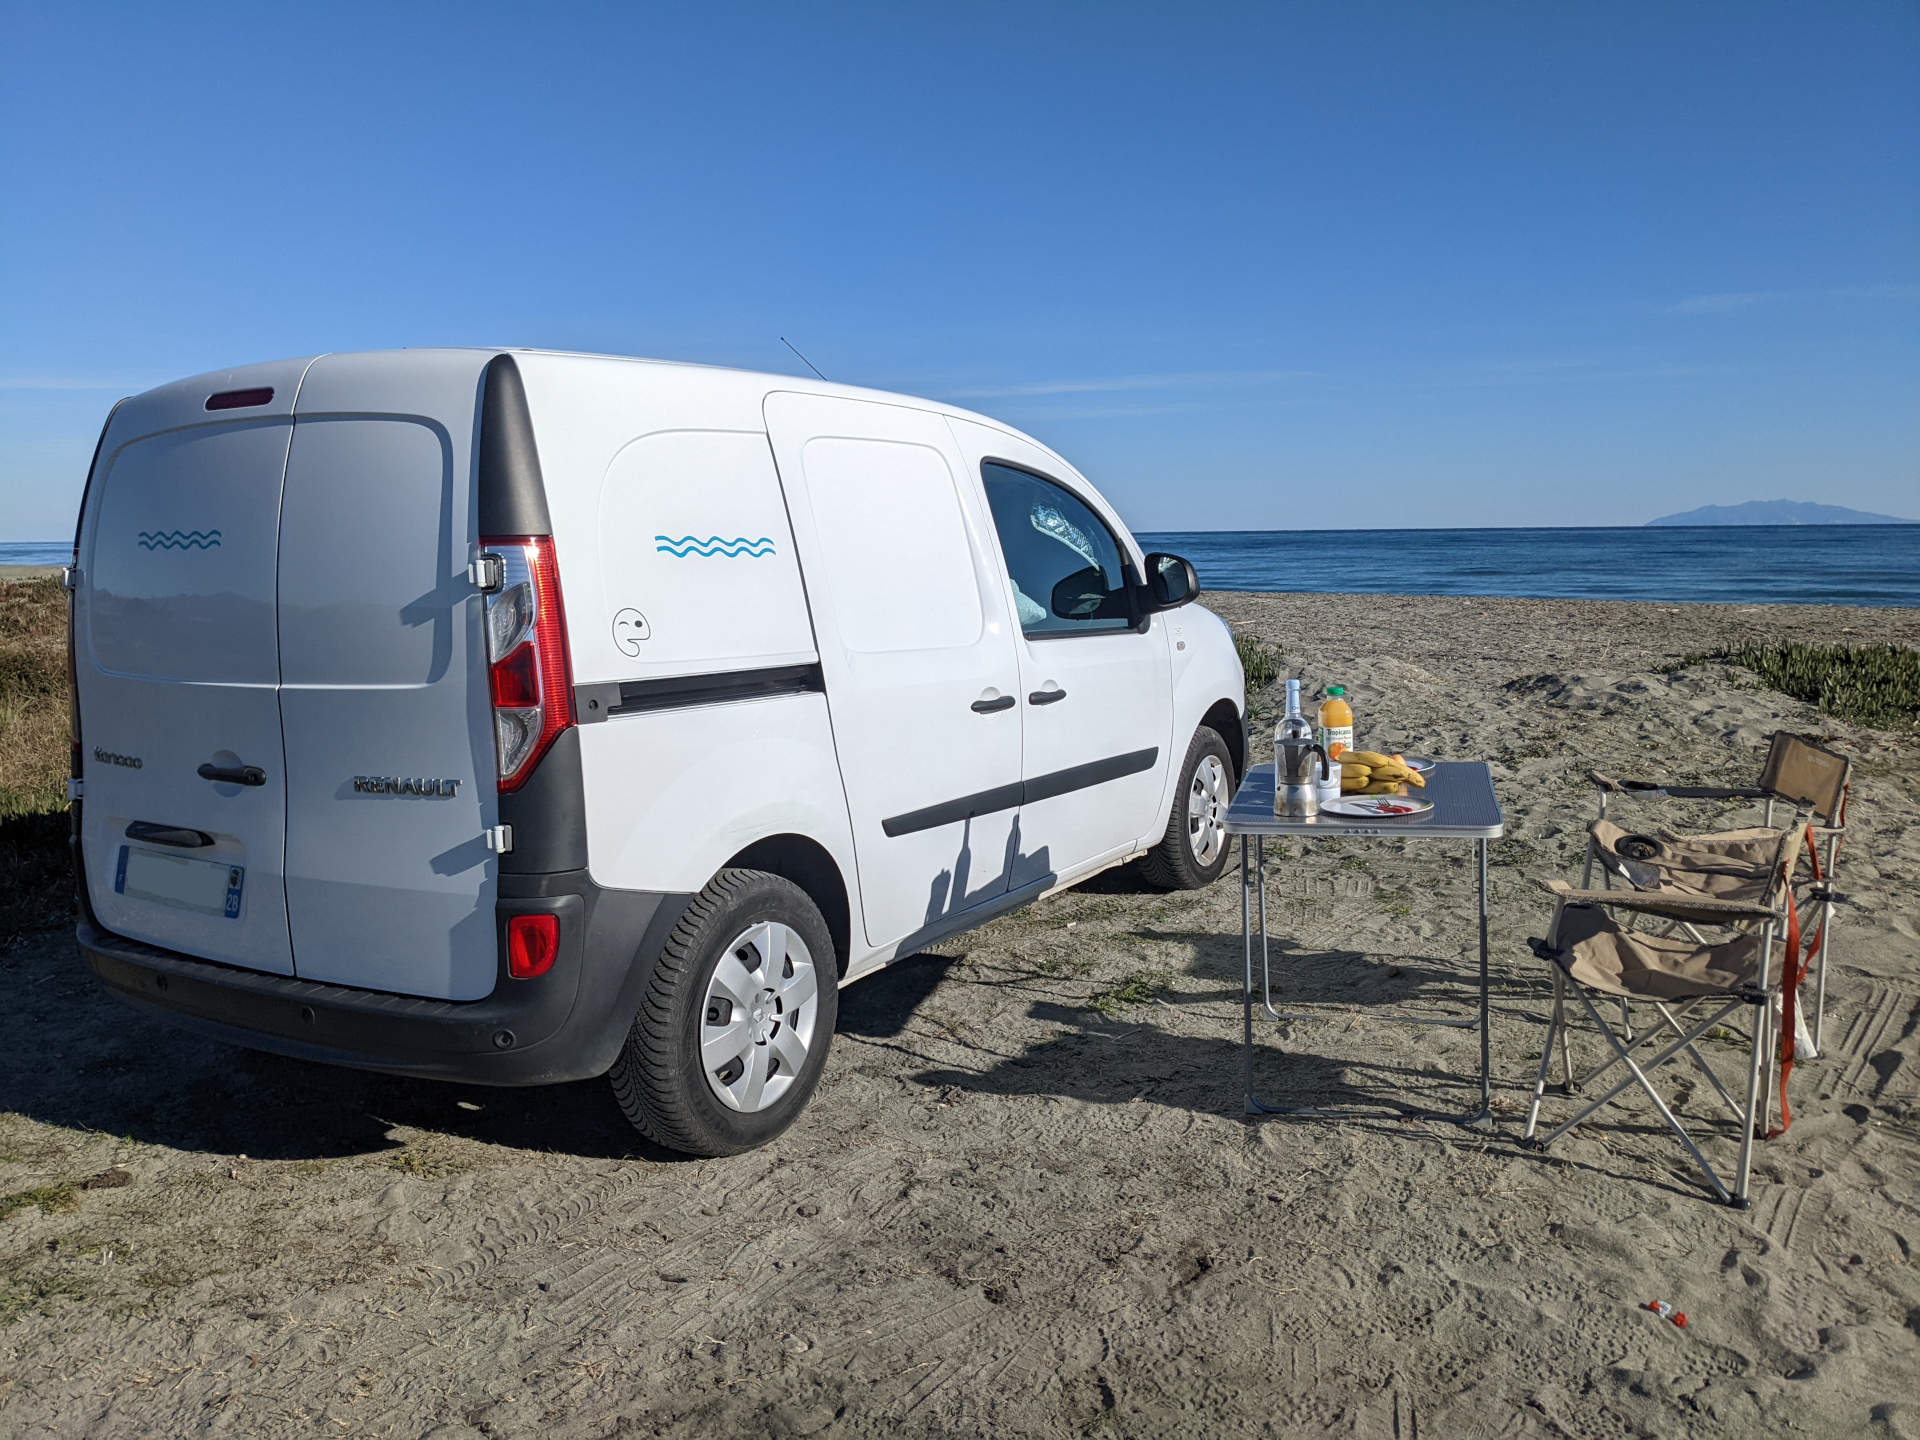 Location Van Corse. Les mini-vans aménagés les plus cool de Corse. Découvrez l'île de beauté en petit camping car au départ de Bastia - Aéroport Poretta.